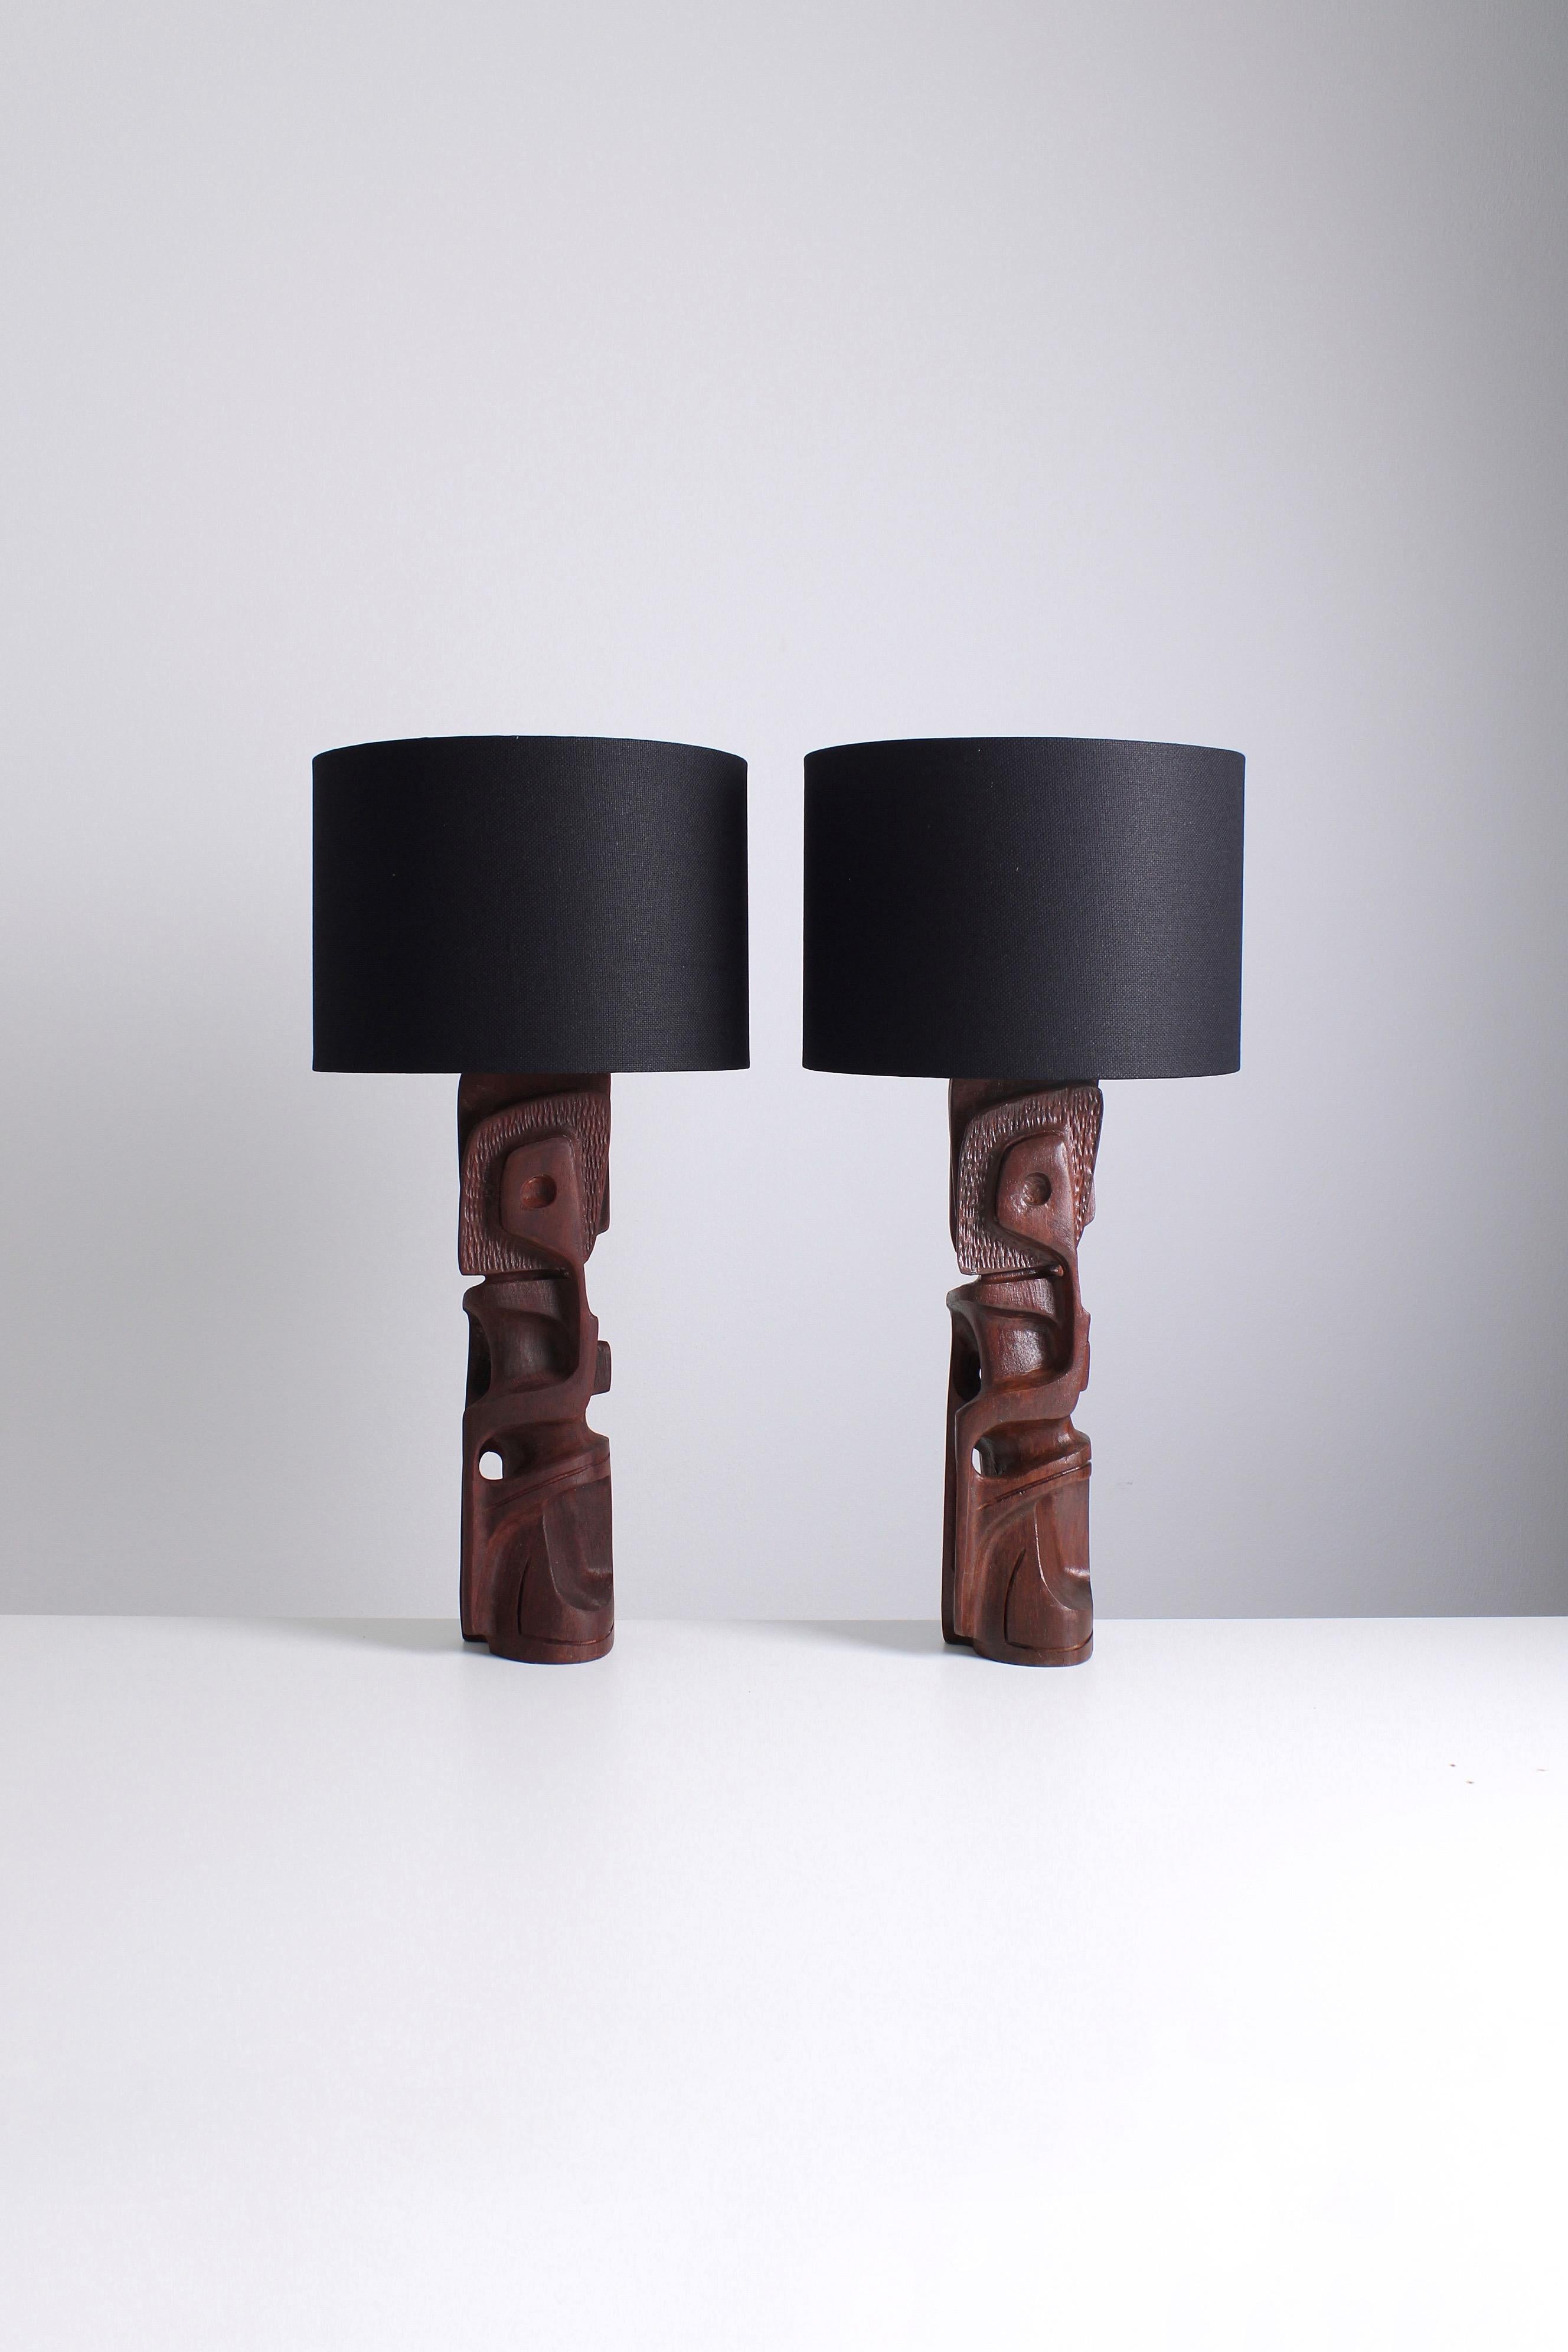 Ensemble de lampes de table sculptées réalisées par Gianni Pinna dans les années 1970. Fabriquées en bois de Legno Padouk, ces lampes exsudent une esthétique robuste et brutaliste. Il convient de noter que si les deux lampes présentent des designs